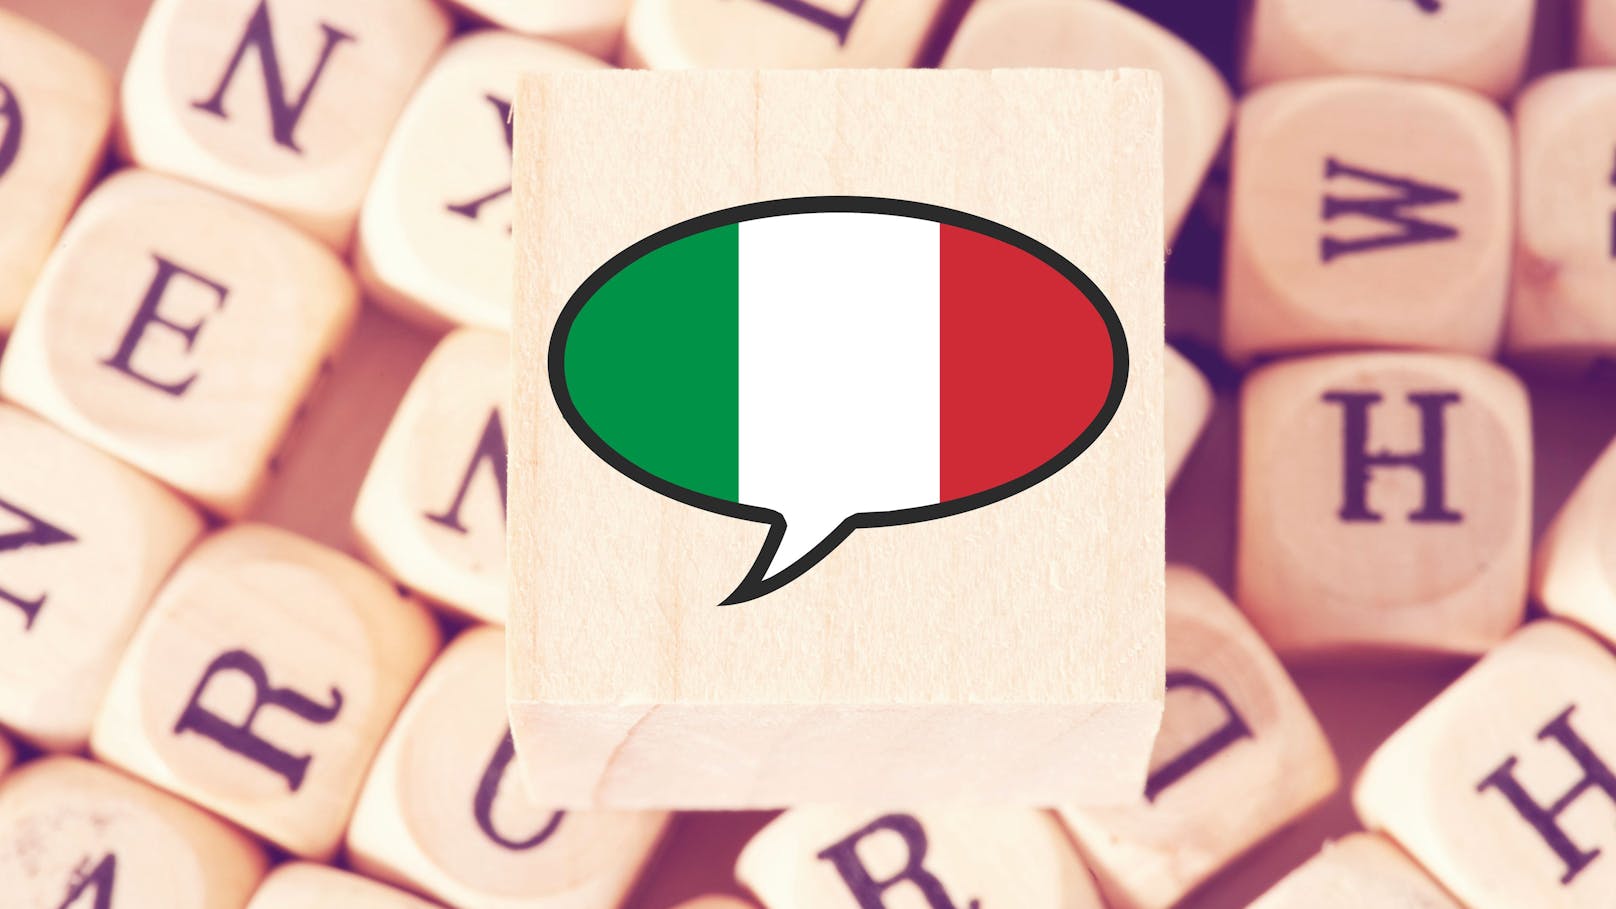 Ein Gesetzesentwurf, welcher die italienische Sprache vor ausländischen Einflüssen schützen soll, sorgt für Diskussionen.